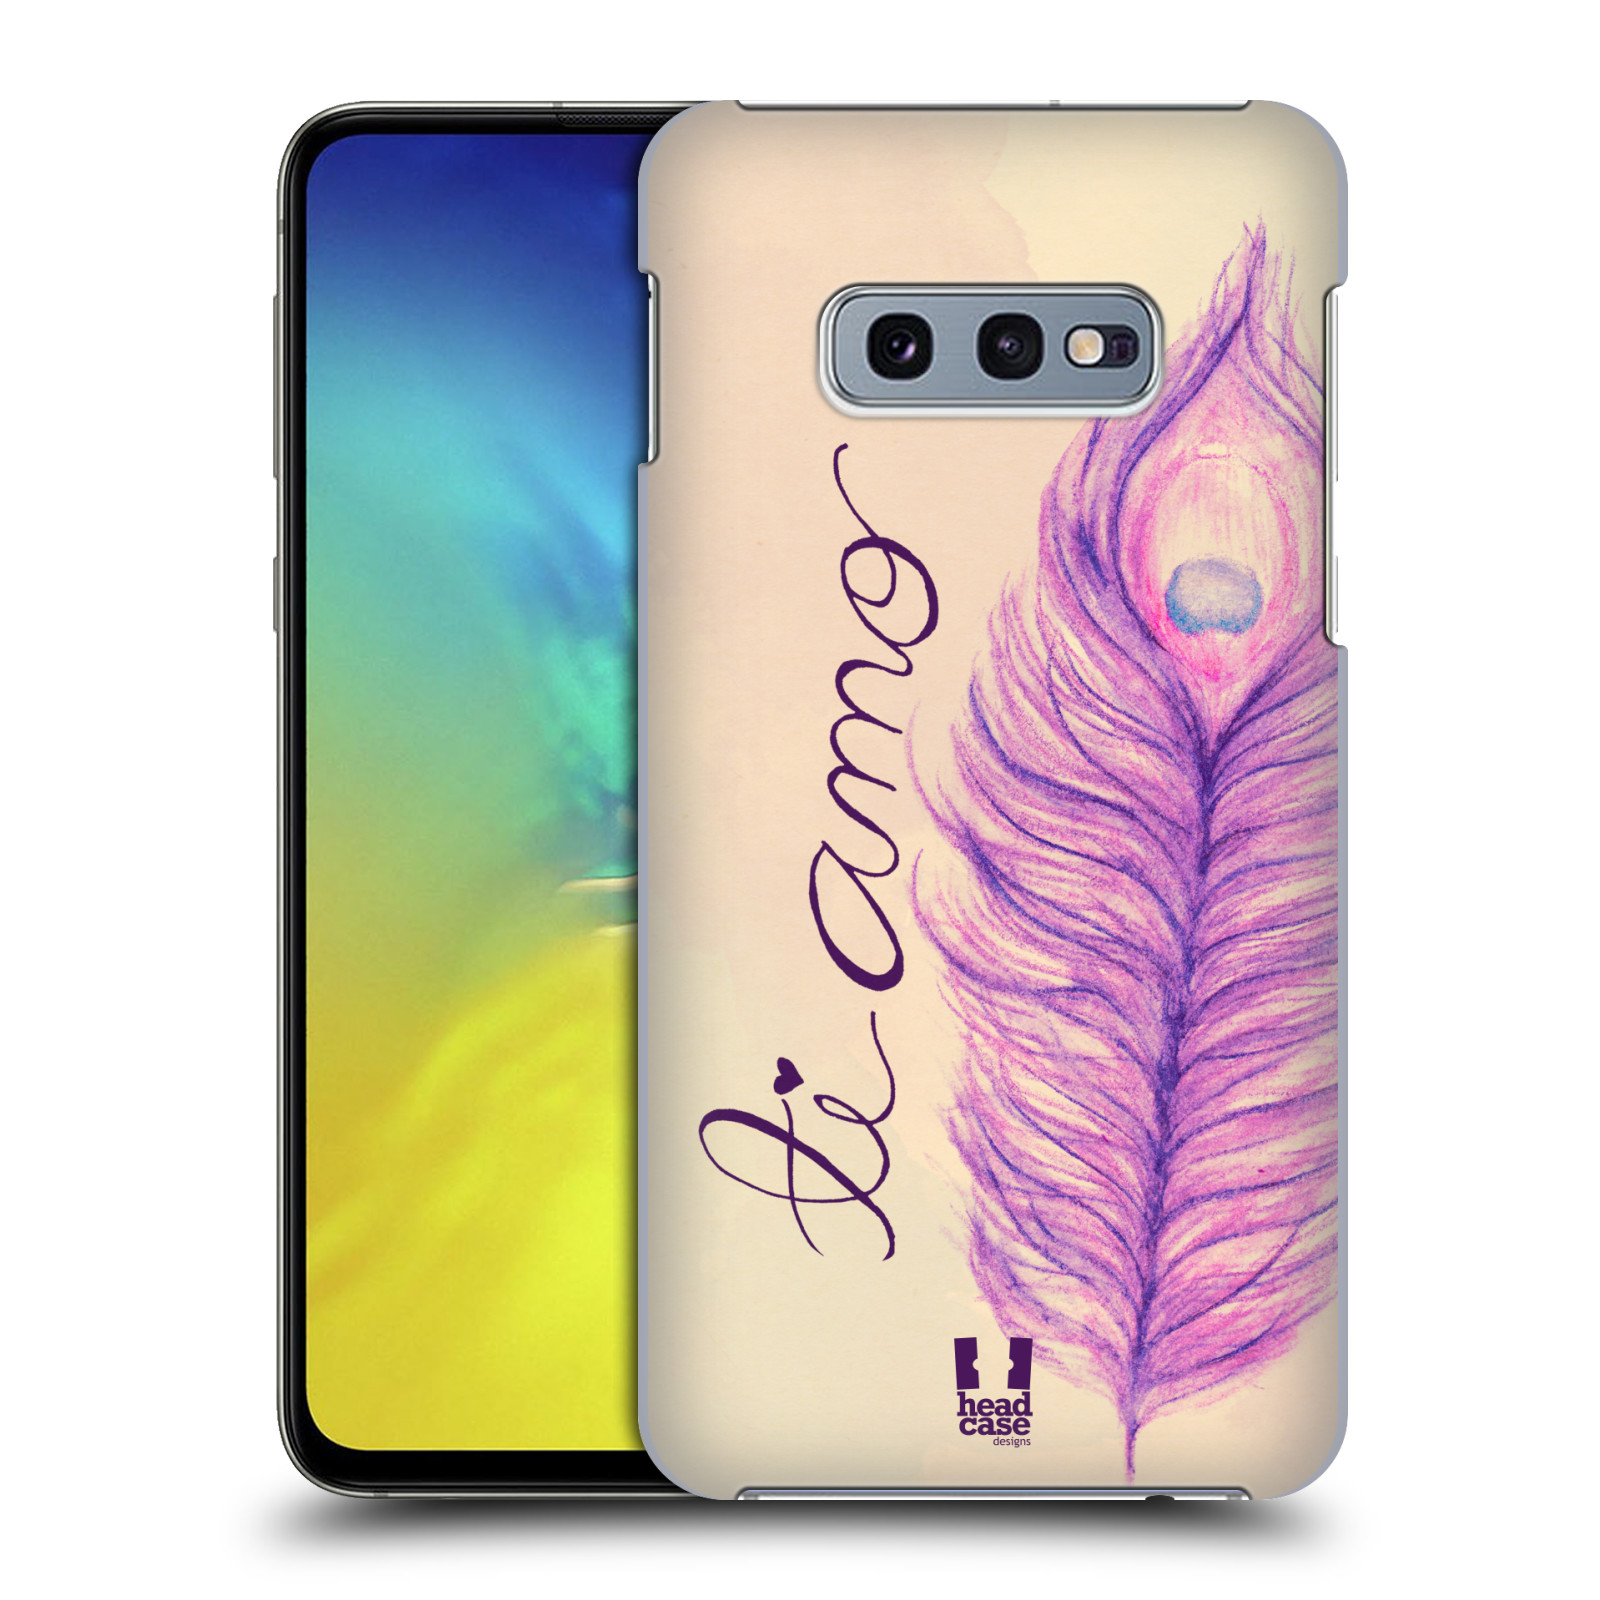 Pouzdro na mobil Samsung Galaxy S10e - HEAD CASE - vzor Paví pírka barevná FIALOVÁ TI AMO